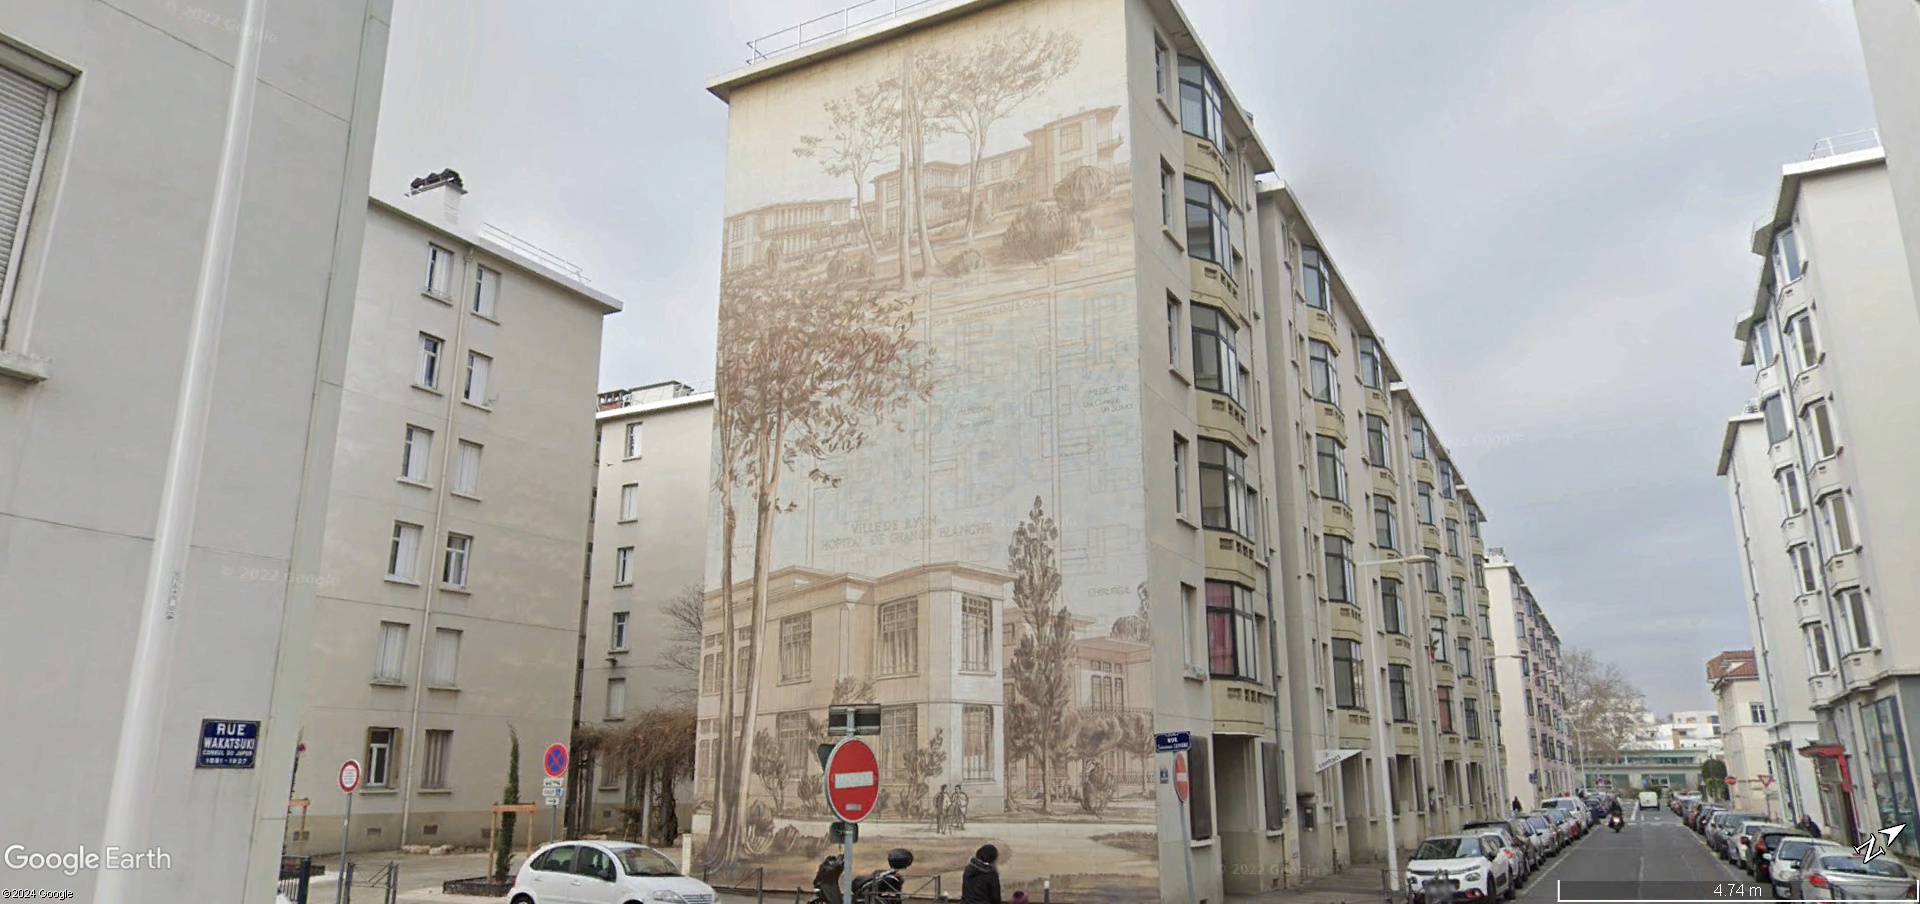 La cité idéale, en 25 fresques d'immeubles à Lyon. A104